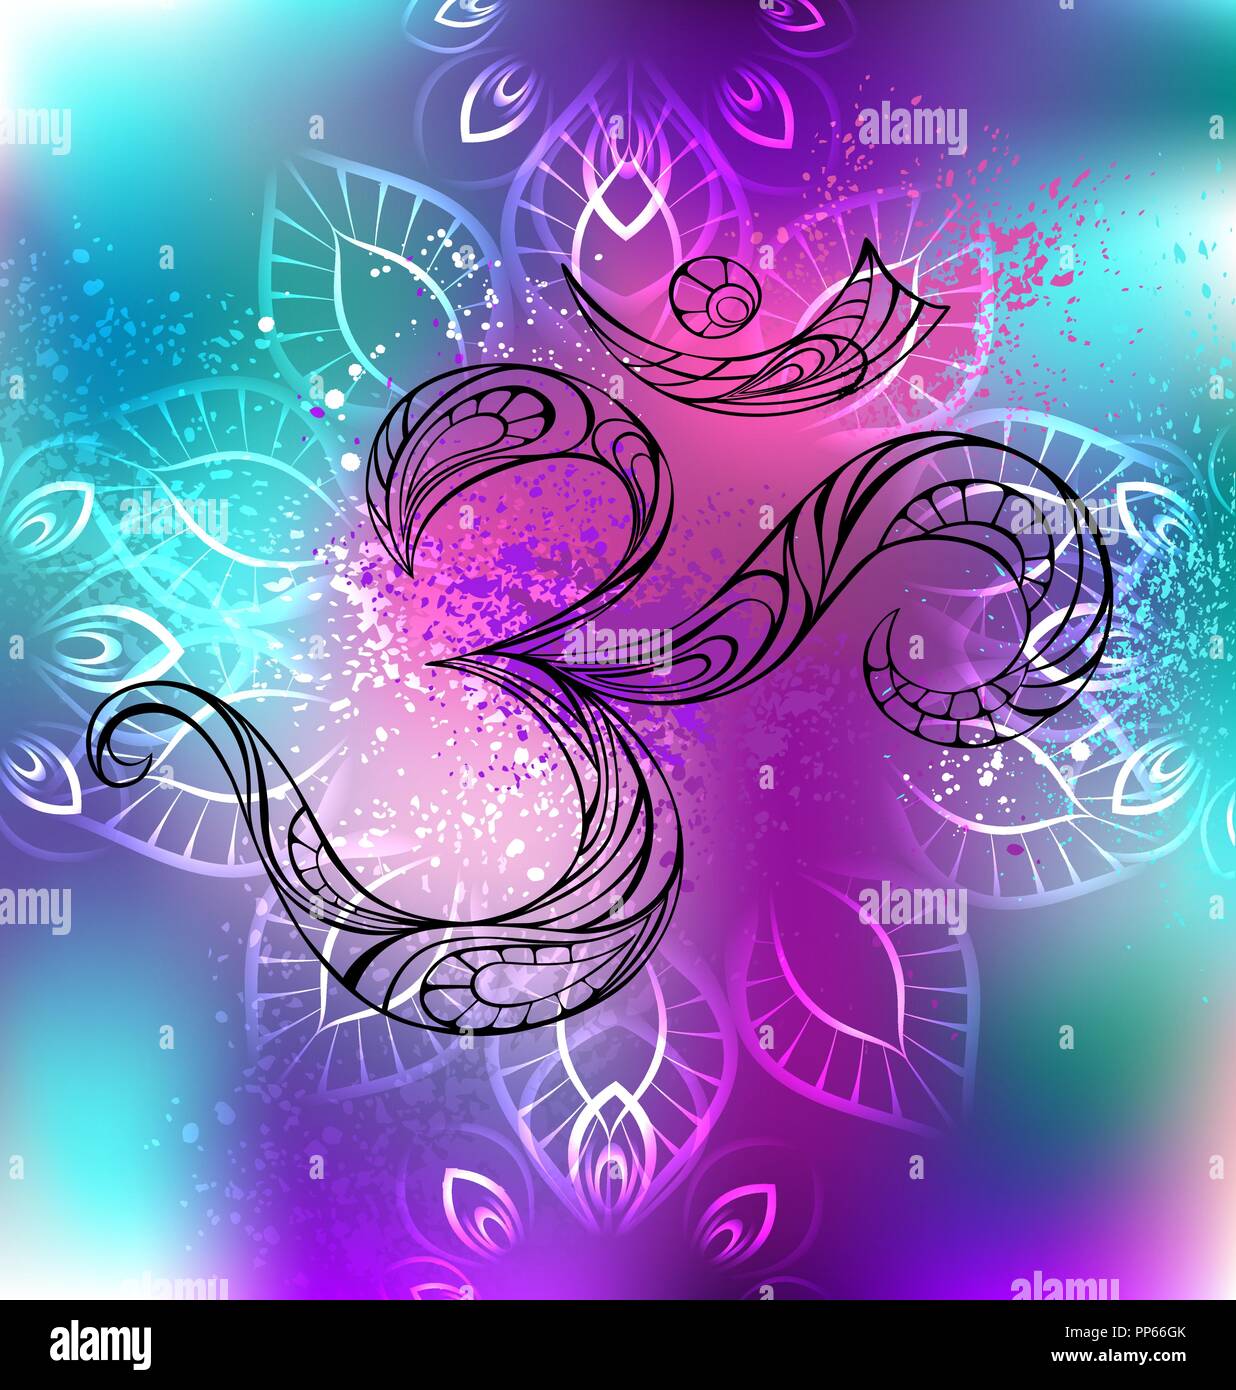 Le symbole Om dans un contour irisé, fond multicolore, ombragés avec mandala. Illustration de Vecteur